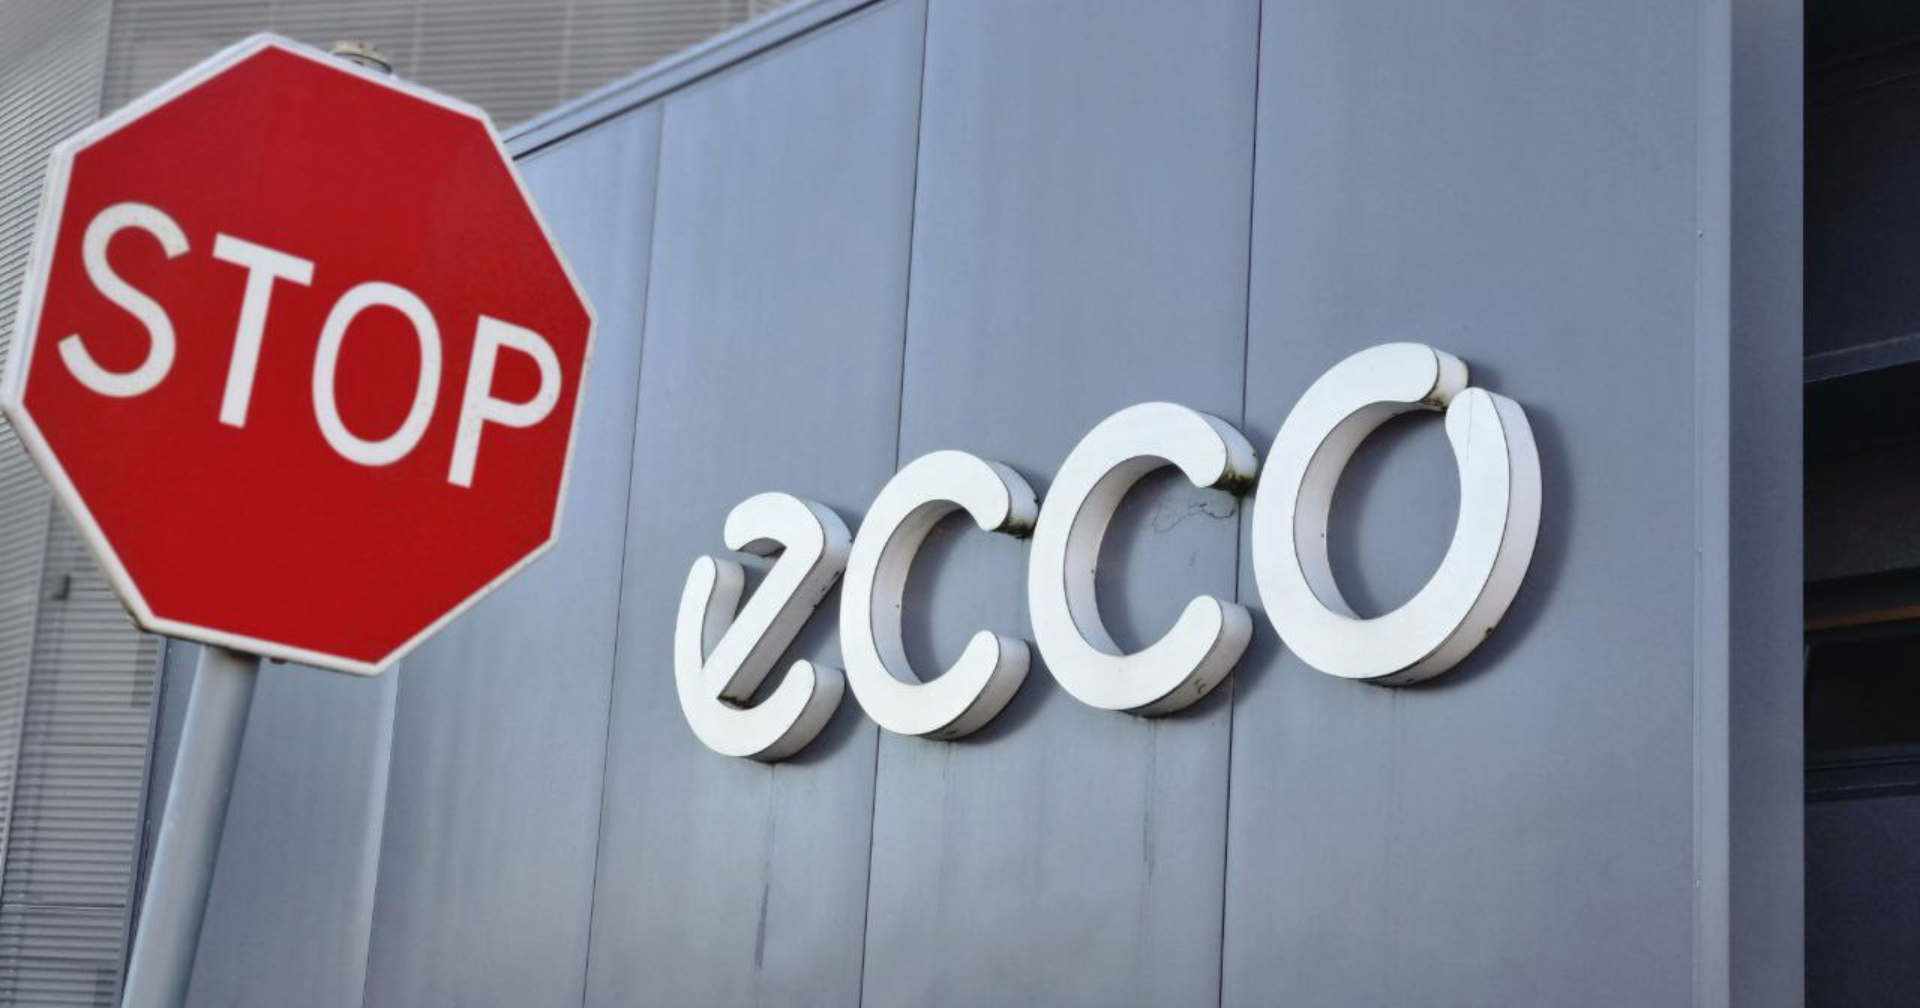 Greve na Ecco'let Portugal: Uma forma de pressionar a empresa a encontrar soluções justas.